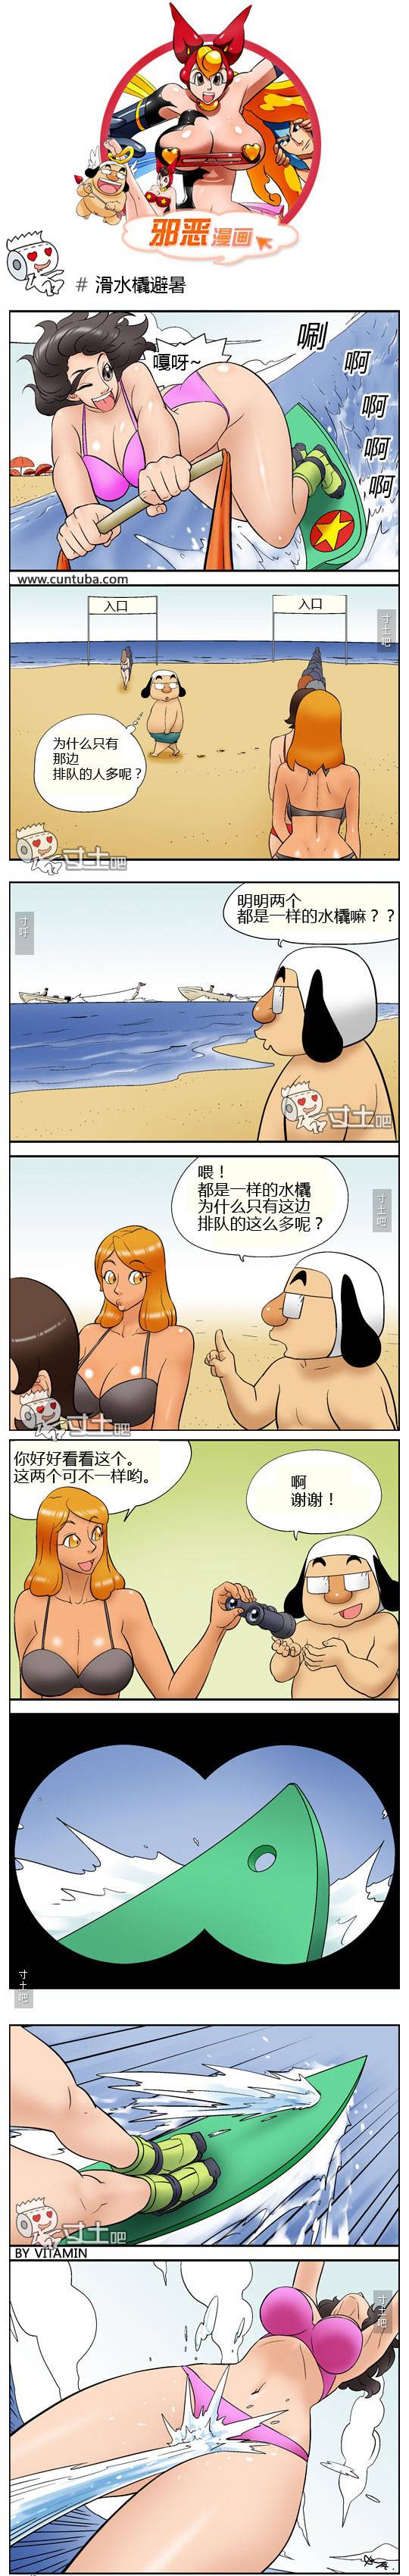 邪恶漫画爆笑囧图第389刊：滑水撬避暑